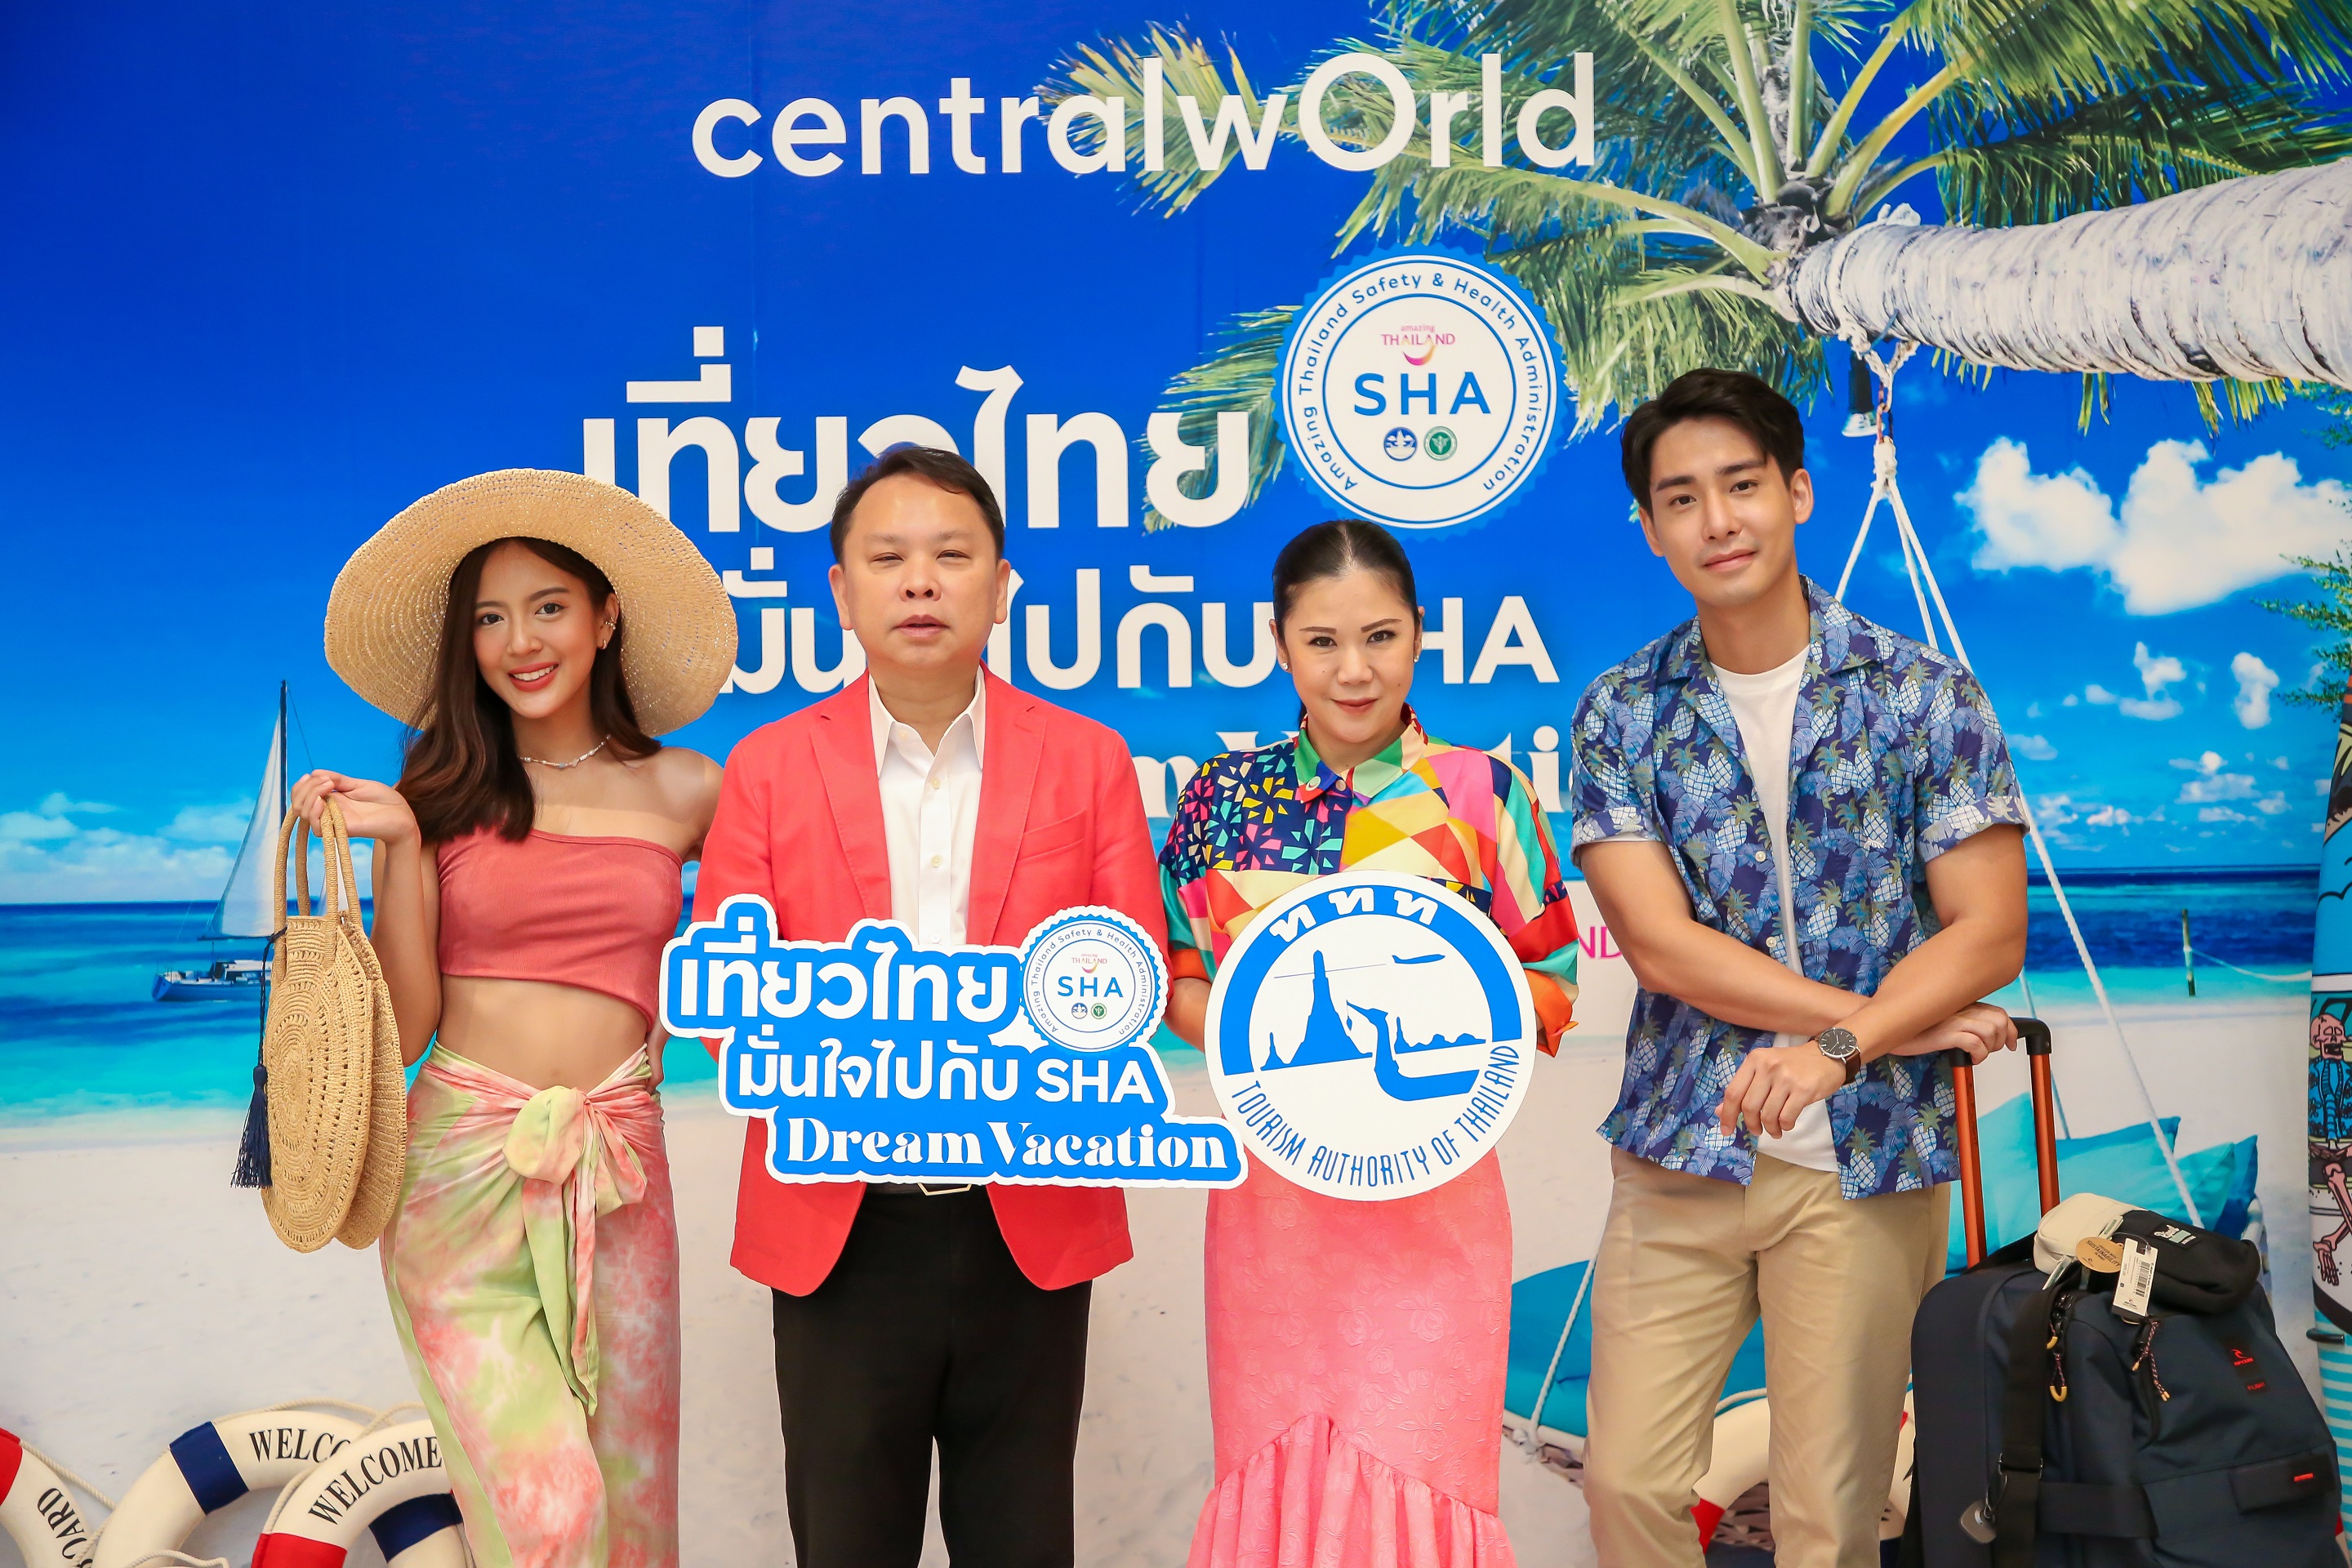 เซ็นทรัลพัฒนา จับมือ ททท. ชวนคนไทยเที่ยวไทยมั่นใจไปกับ SHA Dream Vacation @centralwOrld เริ่ม 7-11 ต.ค. 63 นี้